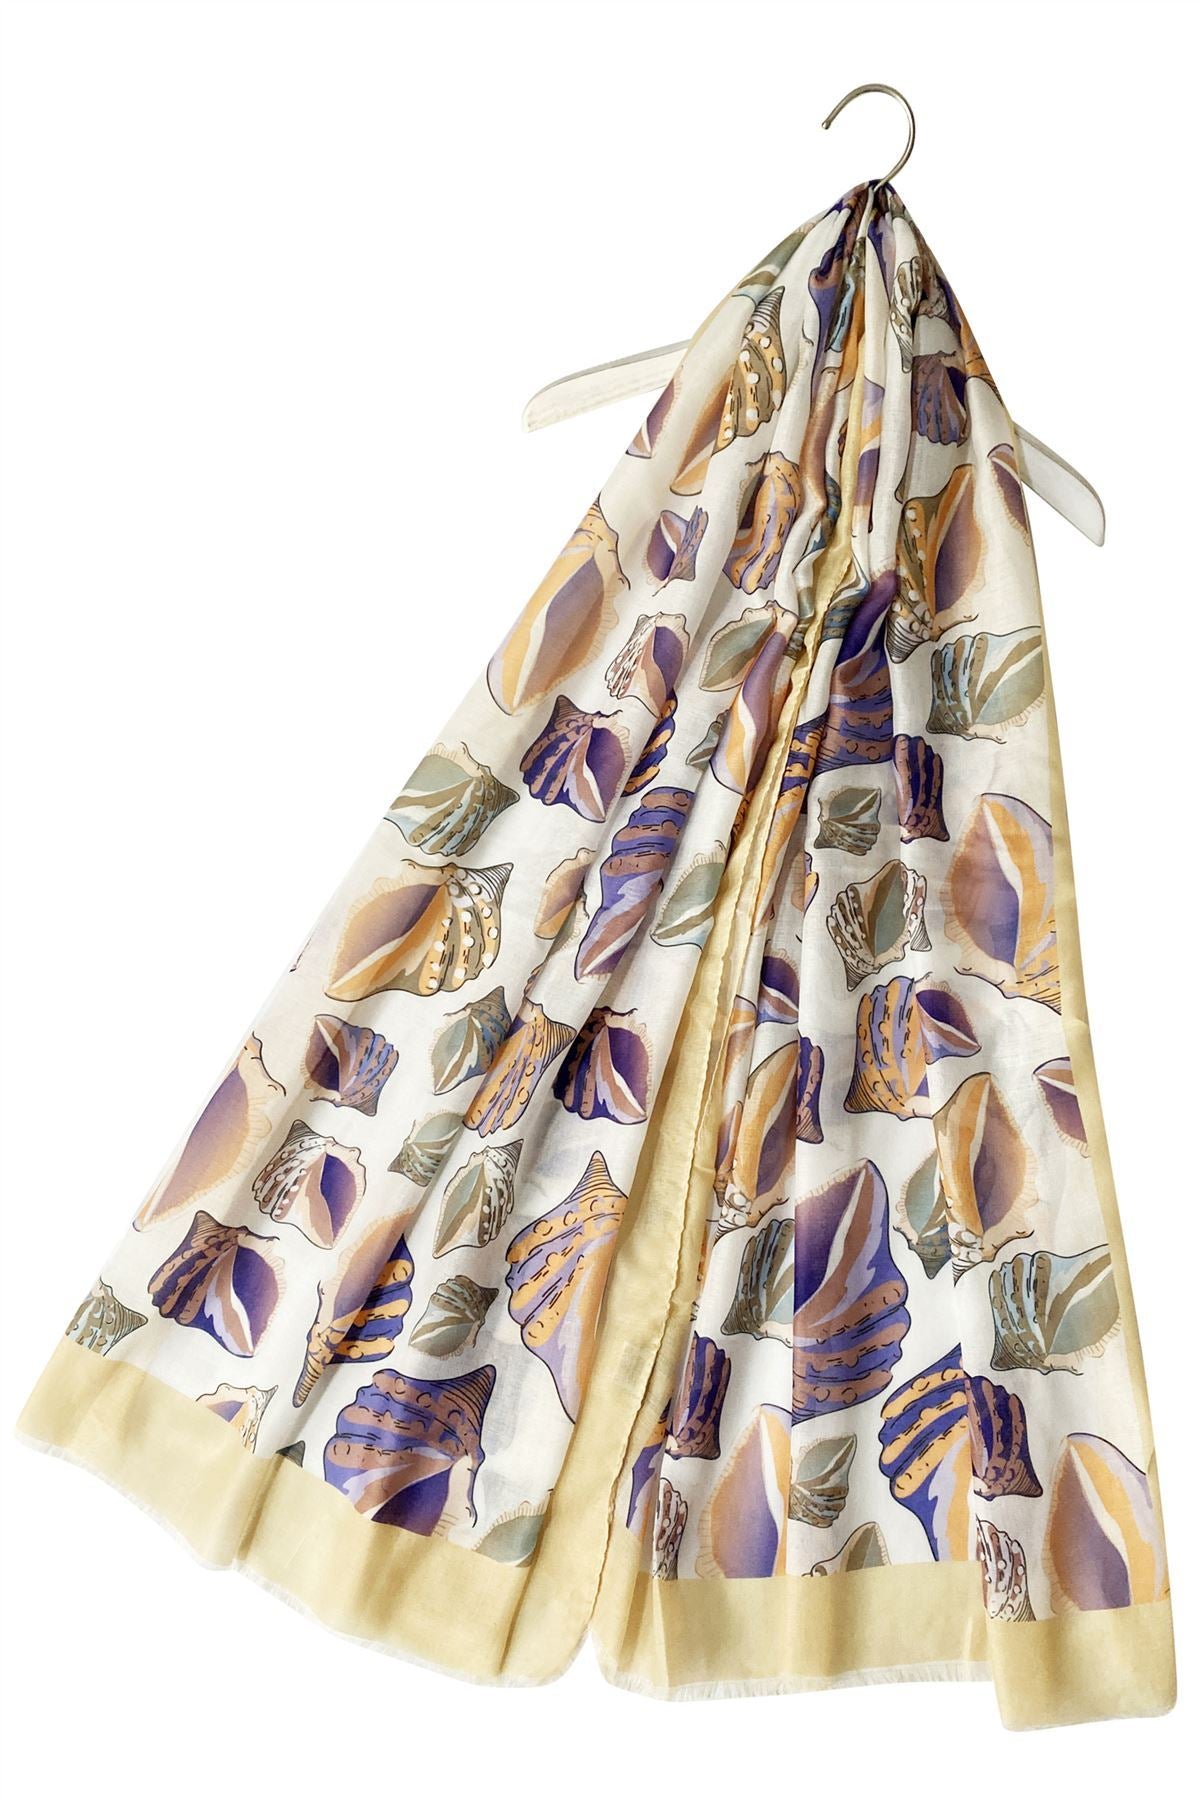 Bavlněná Šála-šátek, 70 cm x 180 cm, Bílá s mušlemi